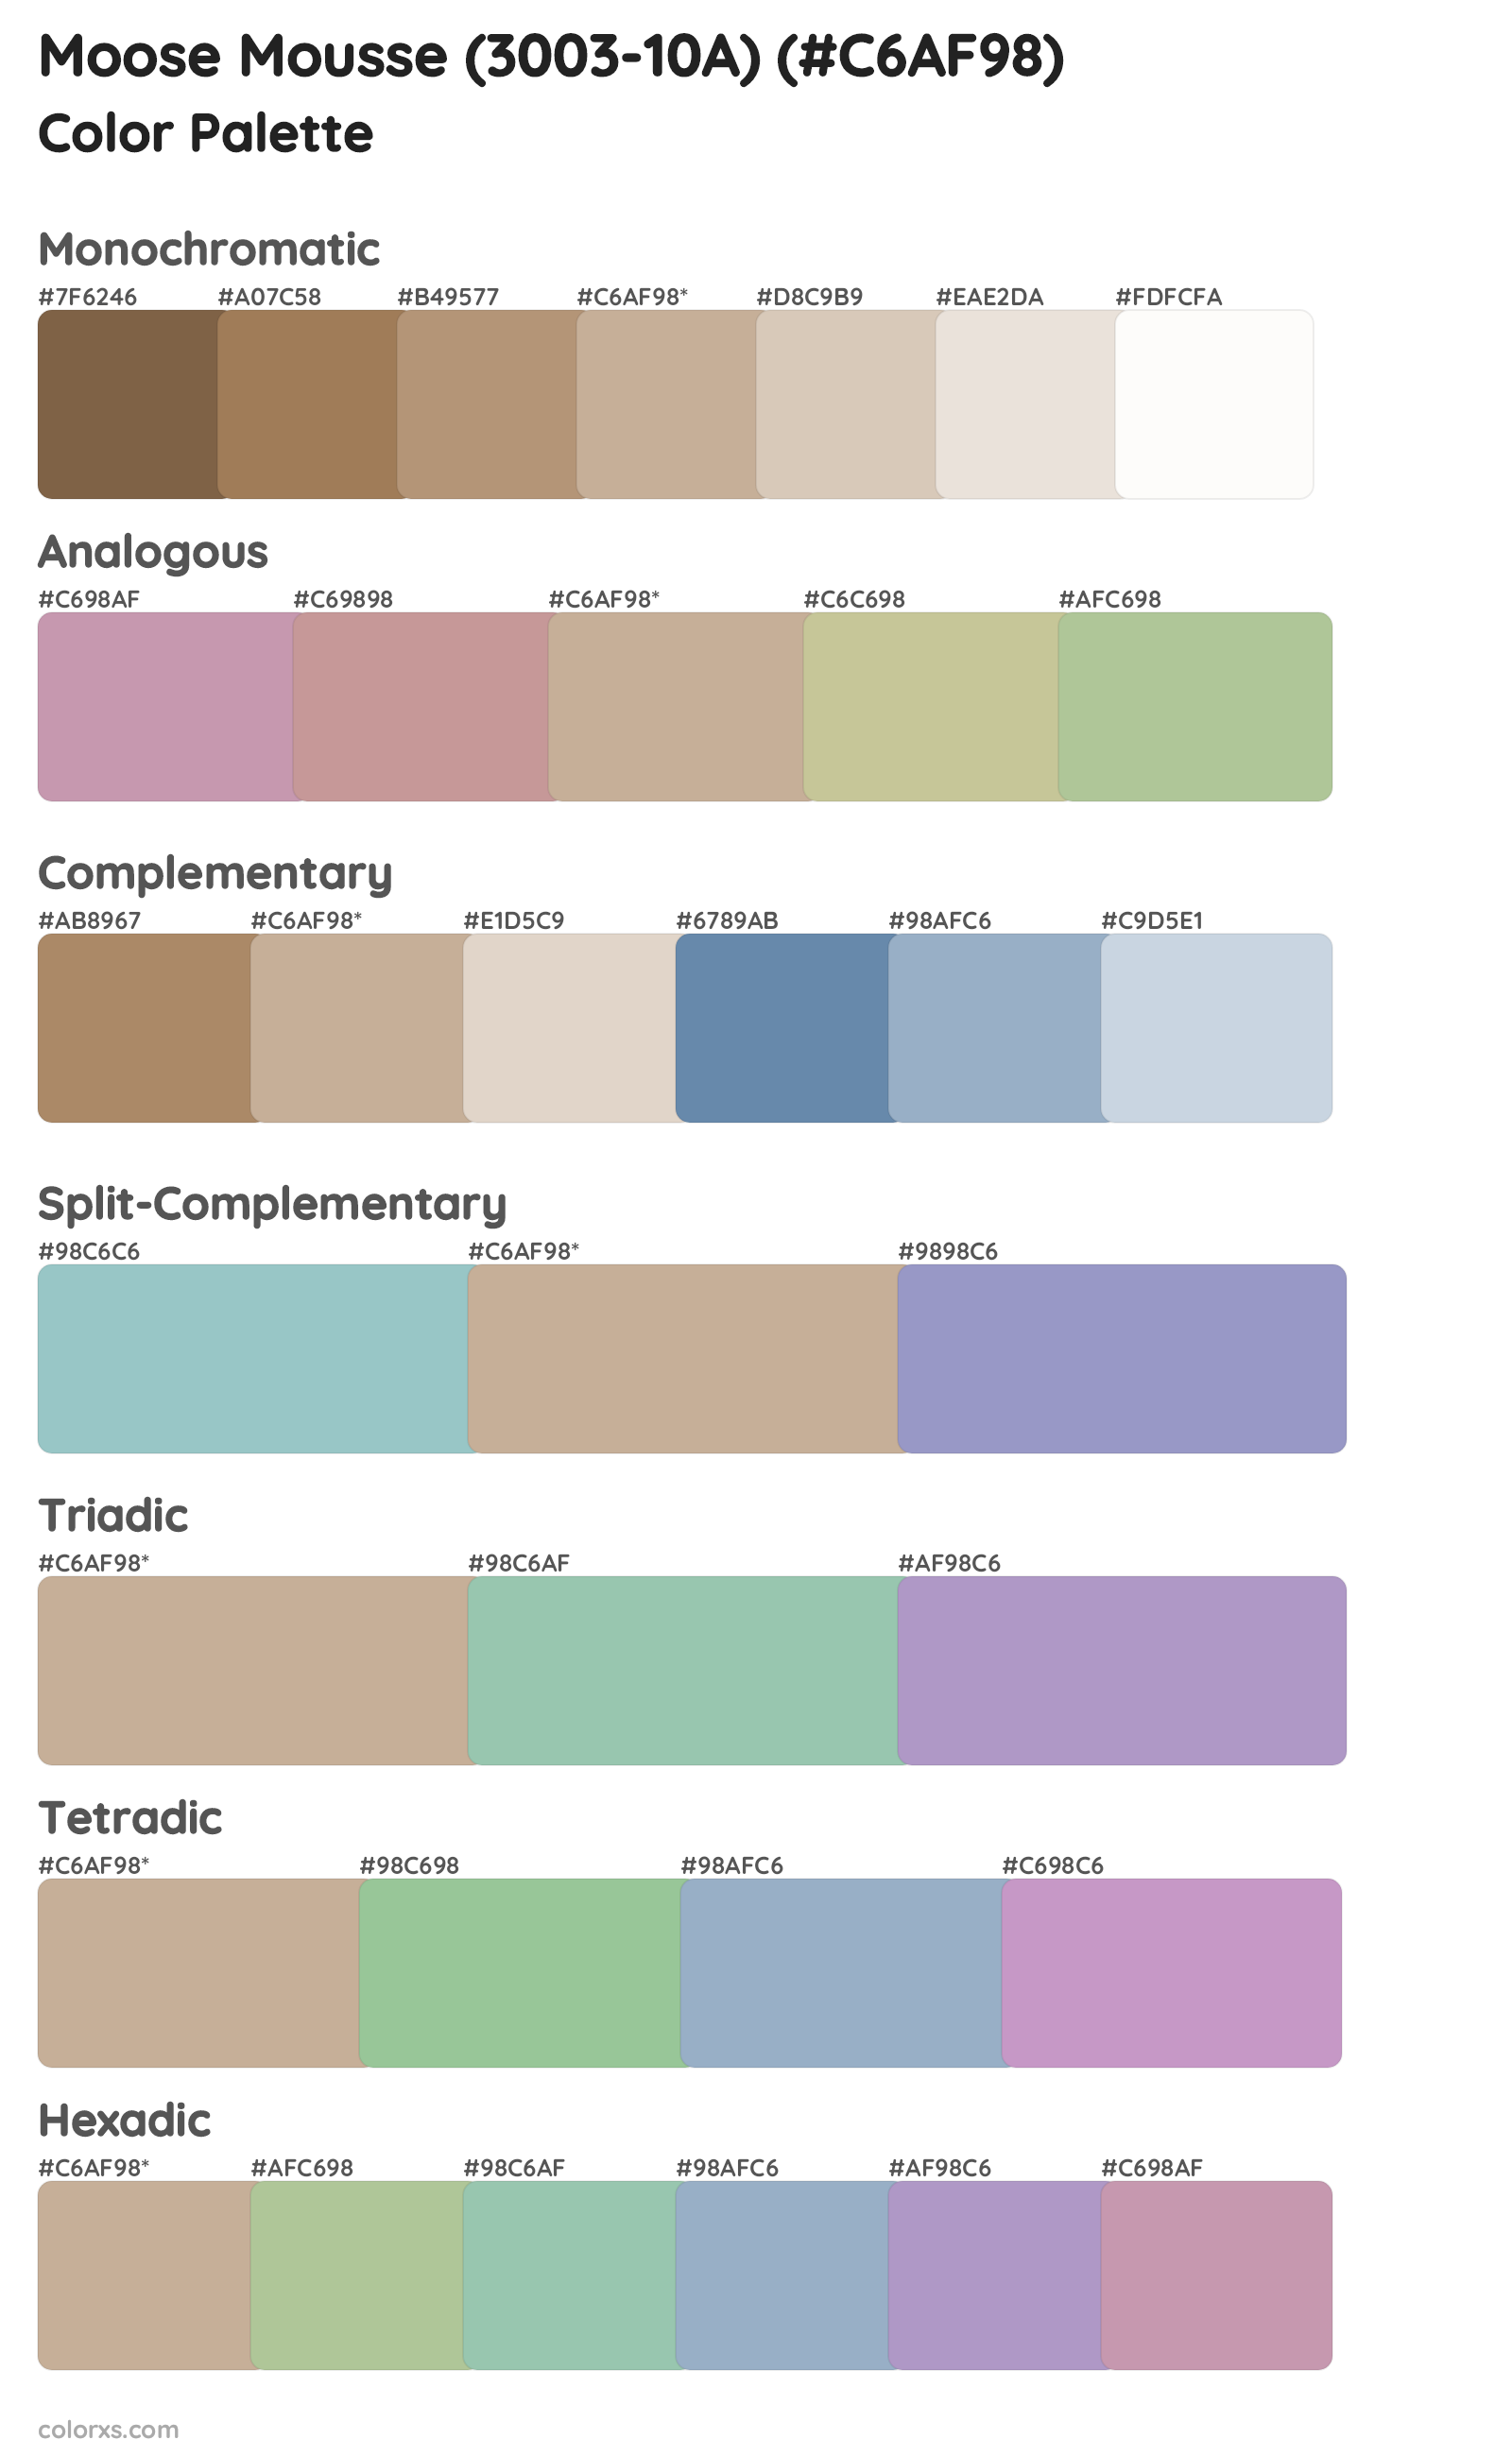 Moose Mousse (3003-10A) Color Scheme Palettes